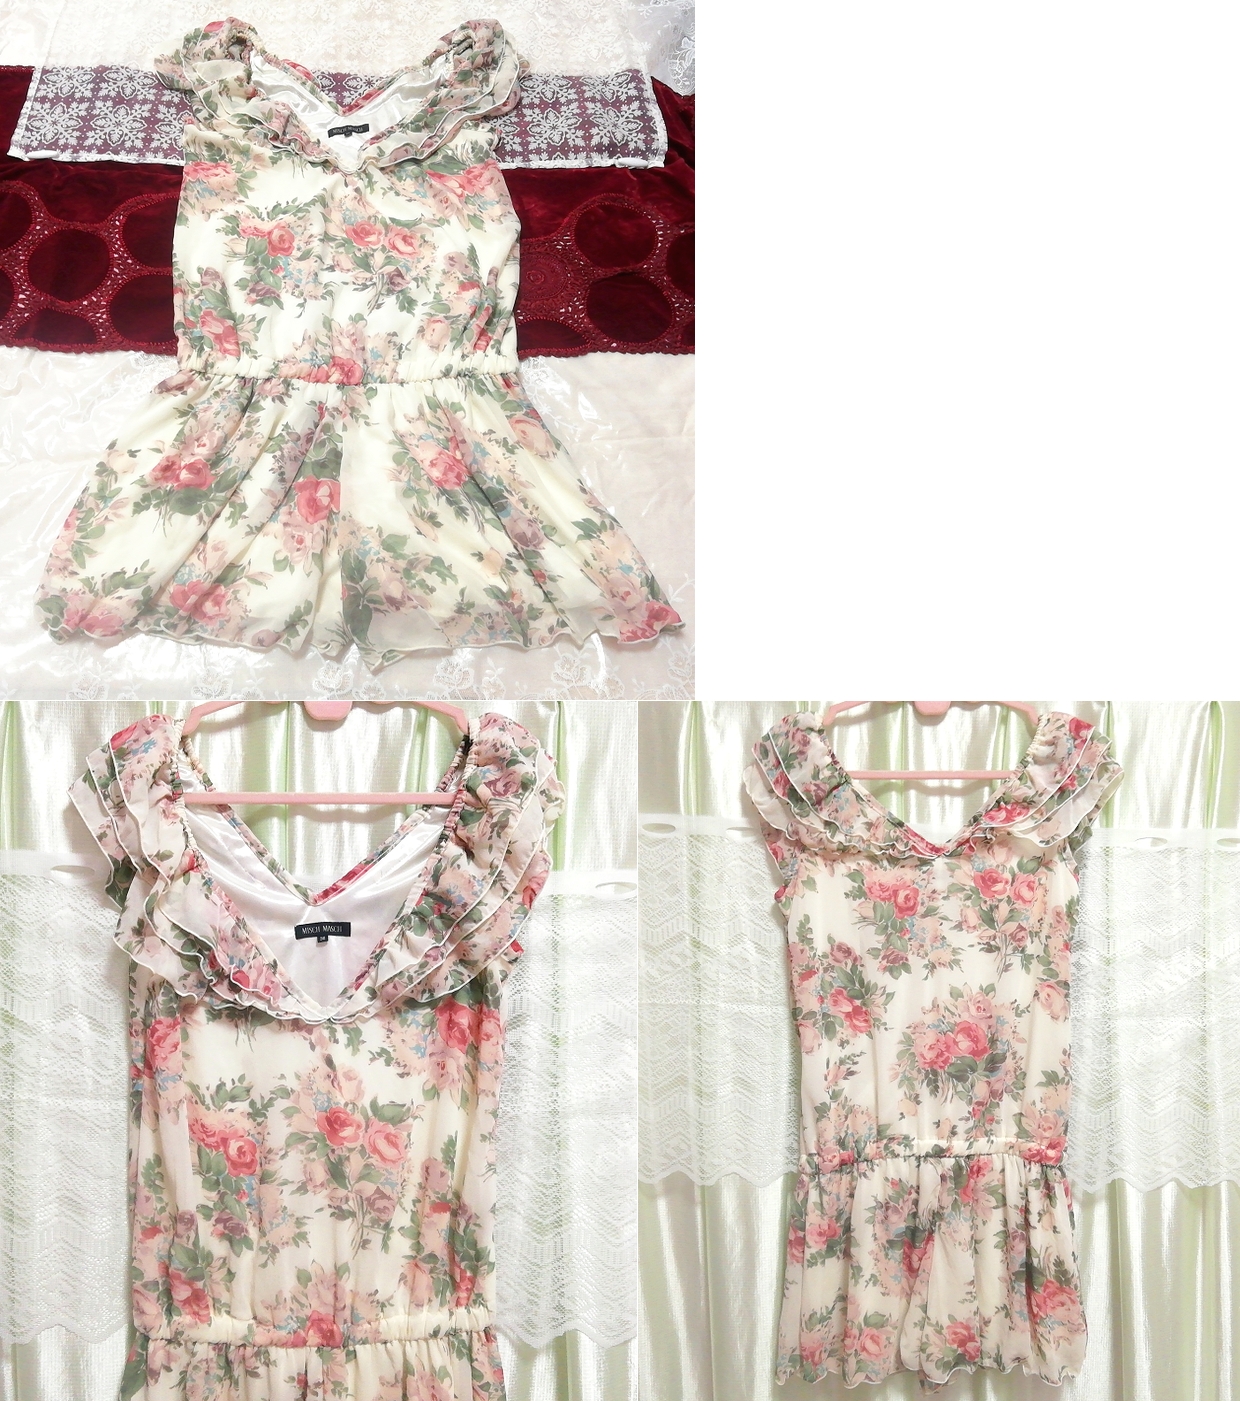 Geblümtes weißes Chiffon-Culotte-Negligé-Nachthemd mit Blumendruck, Mode, Frauenmode, Nachtwäsche, Pyjama